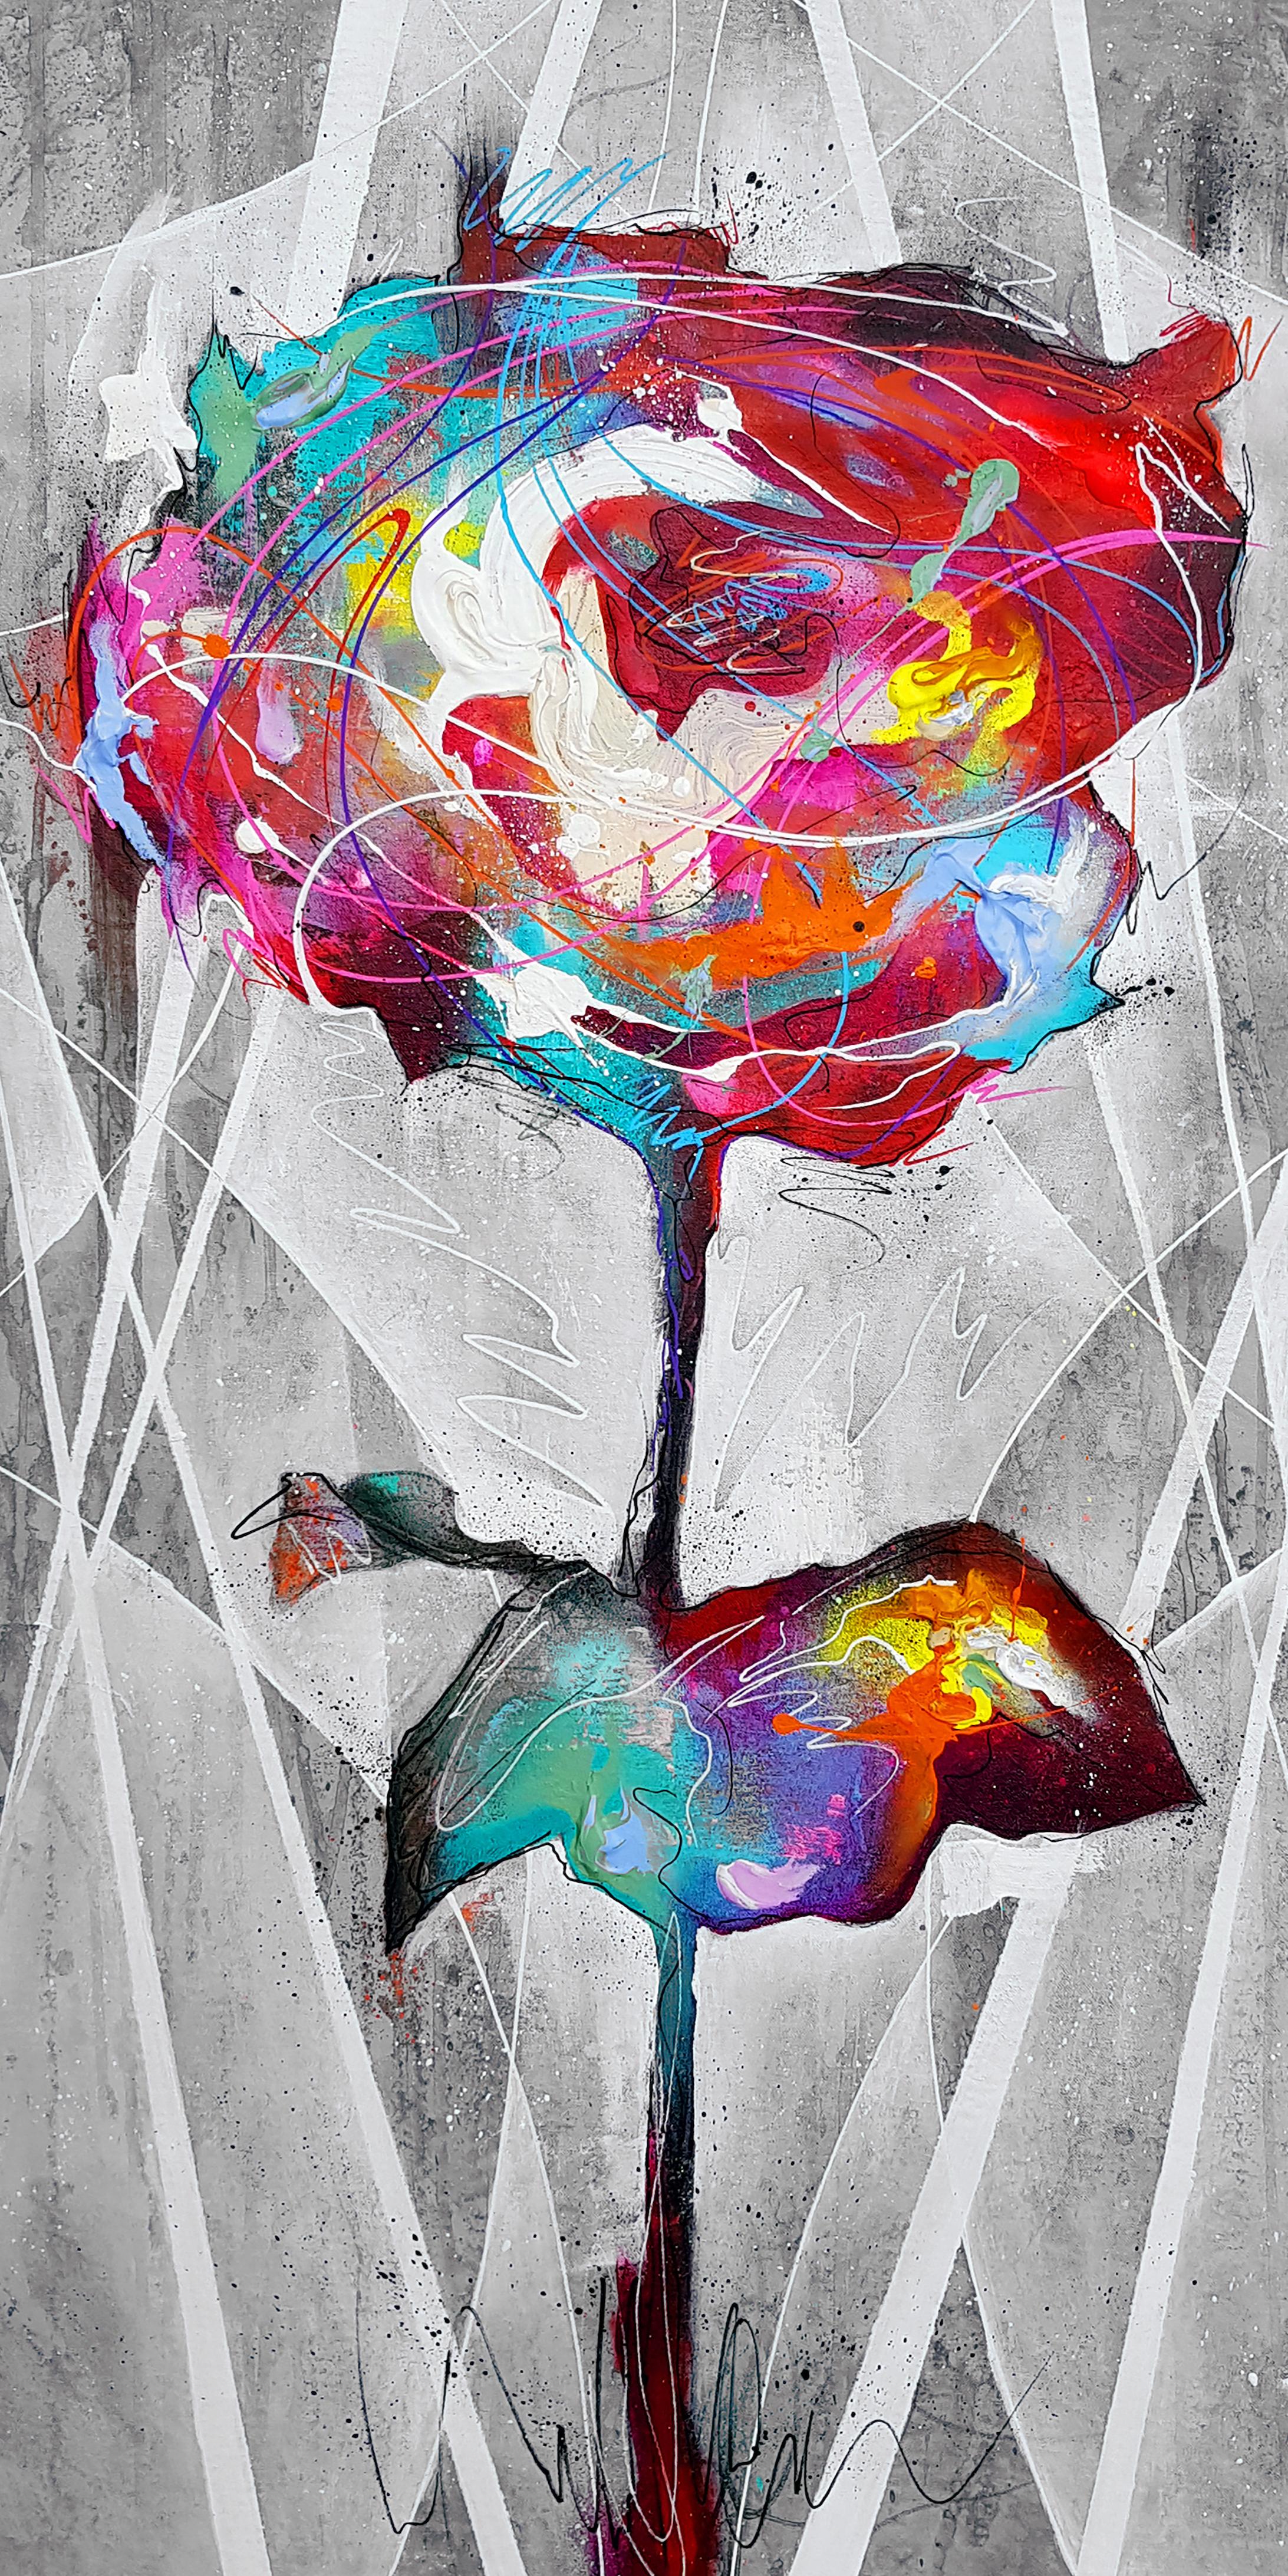 Danny O'Connor Figurative Painting – Rose - 21. Jahrhundert, Zeitgenössische Malerei, Graffiti, Blume, Gemischte Medien